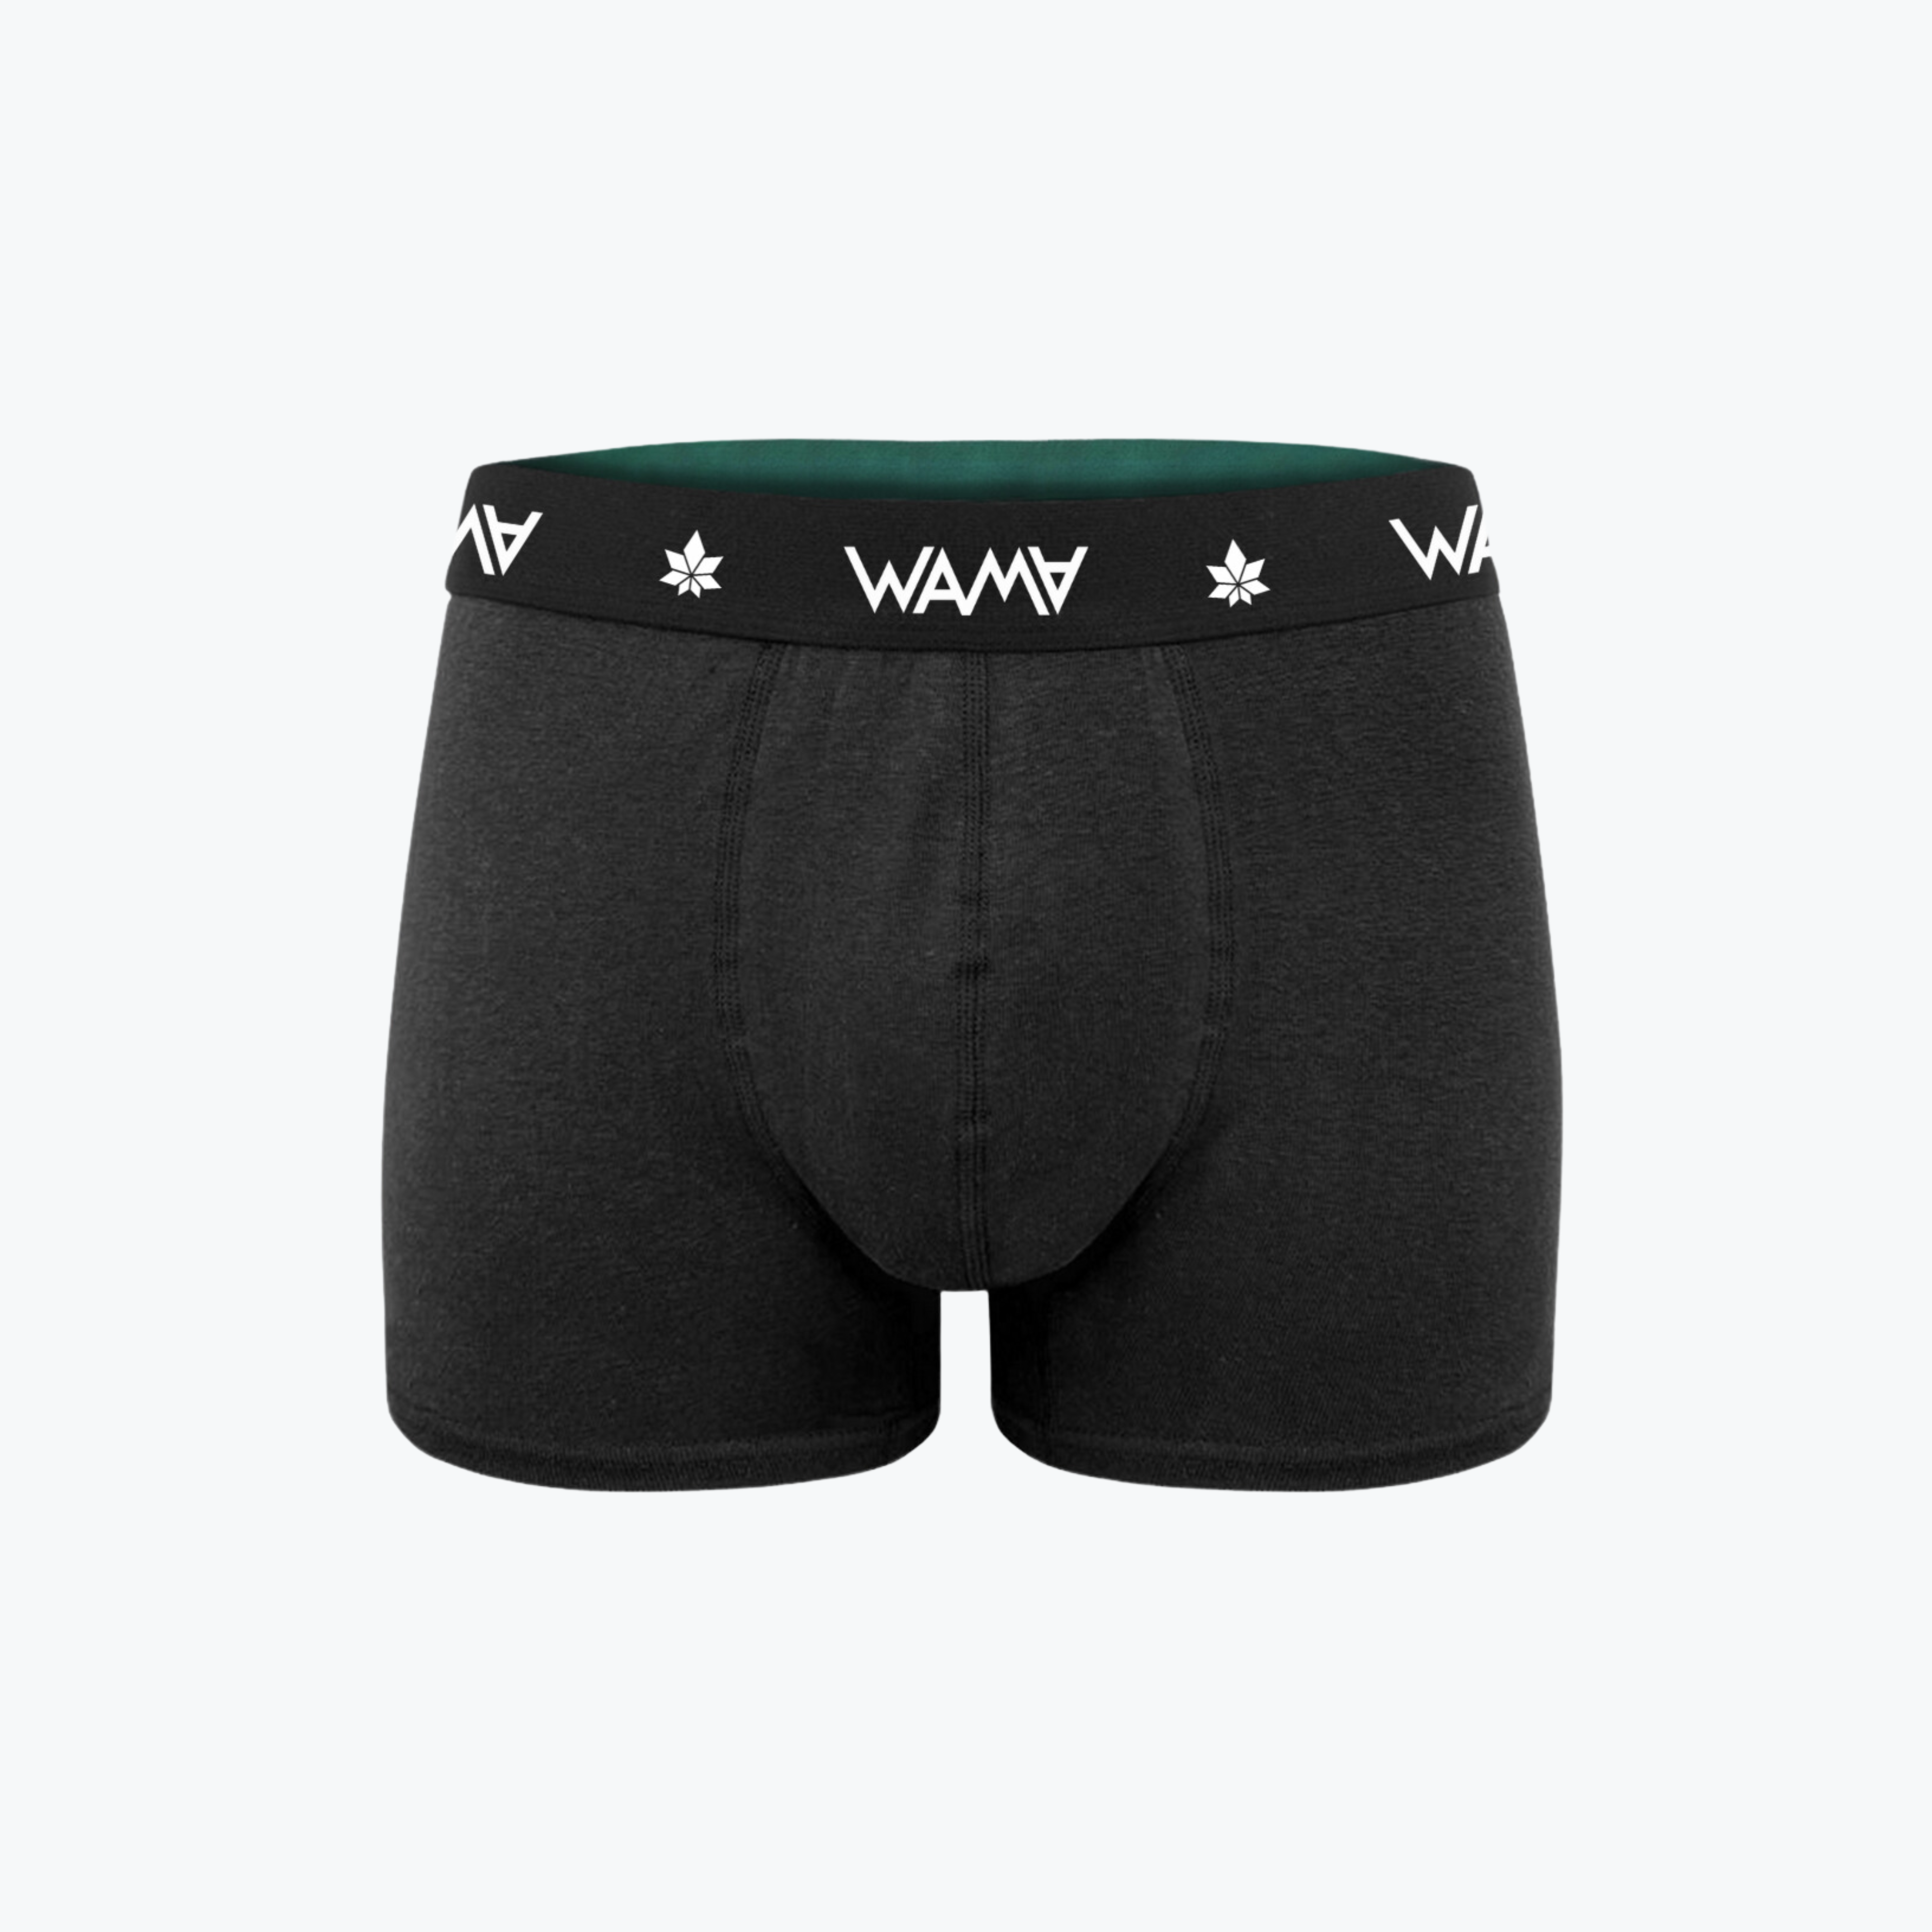 Do You Wear Underwear with Swim Trunks? – WAMA Underwear